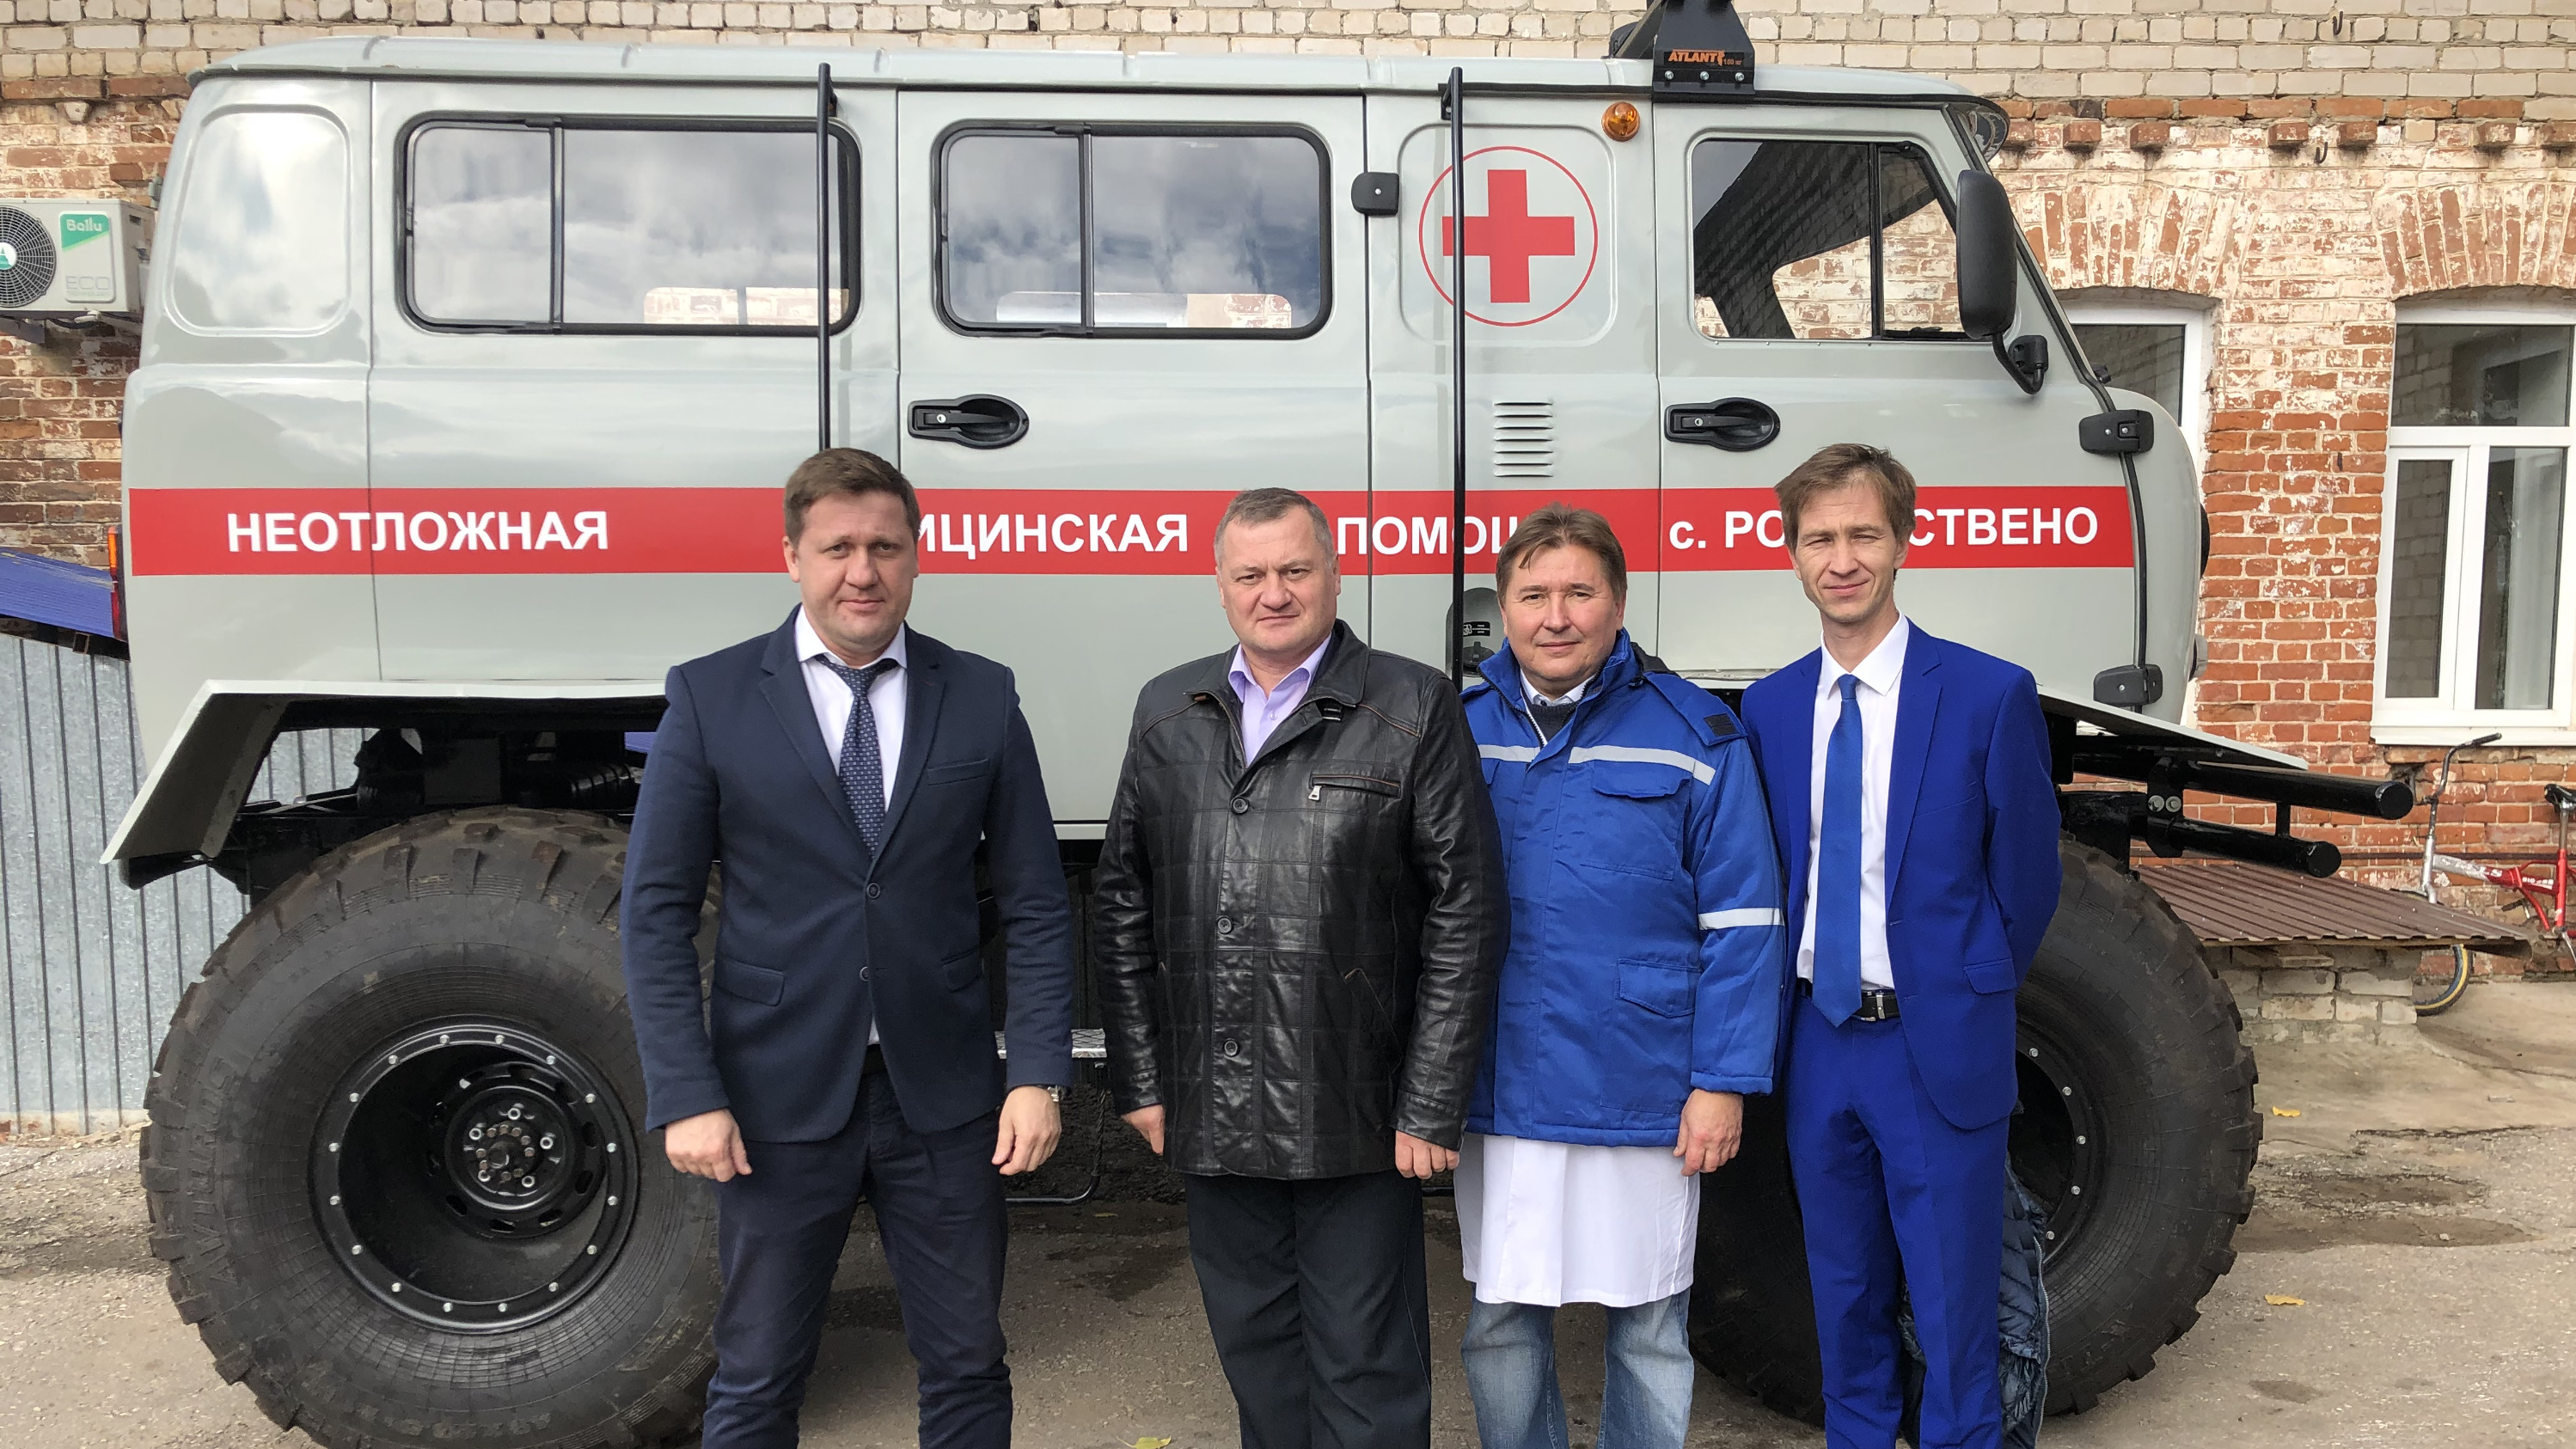 Чудо медицины: в Самарской области поликлинике подарили «буханку» на гигантских колёсах